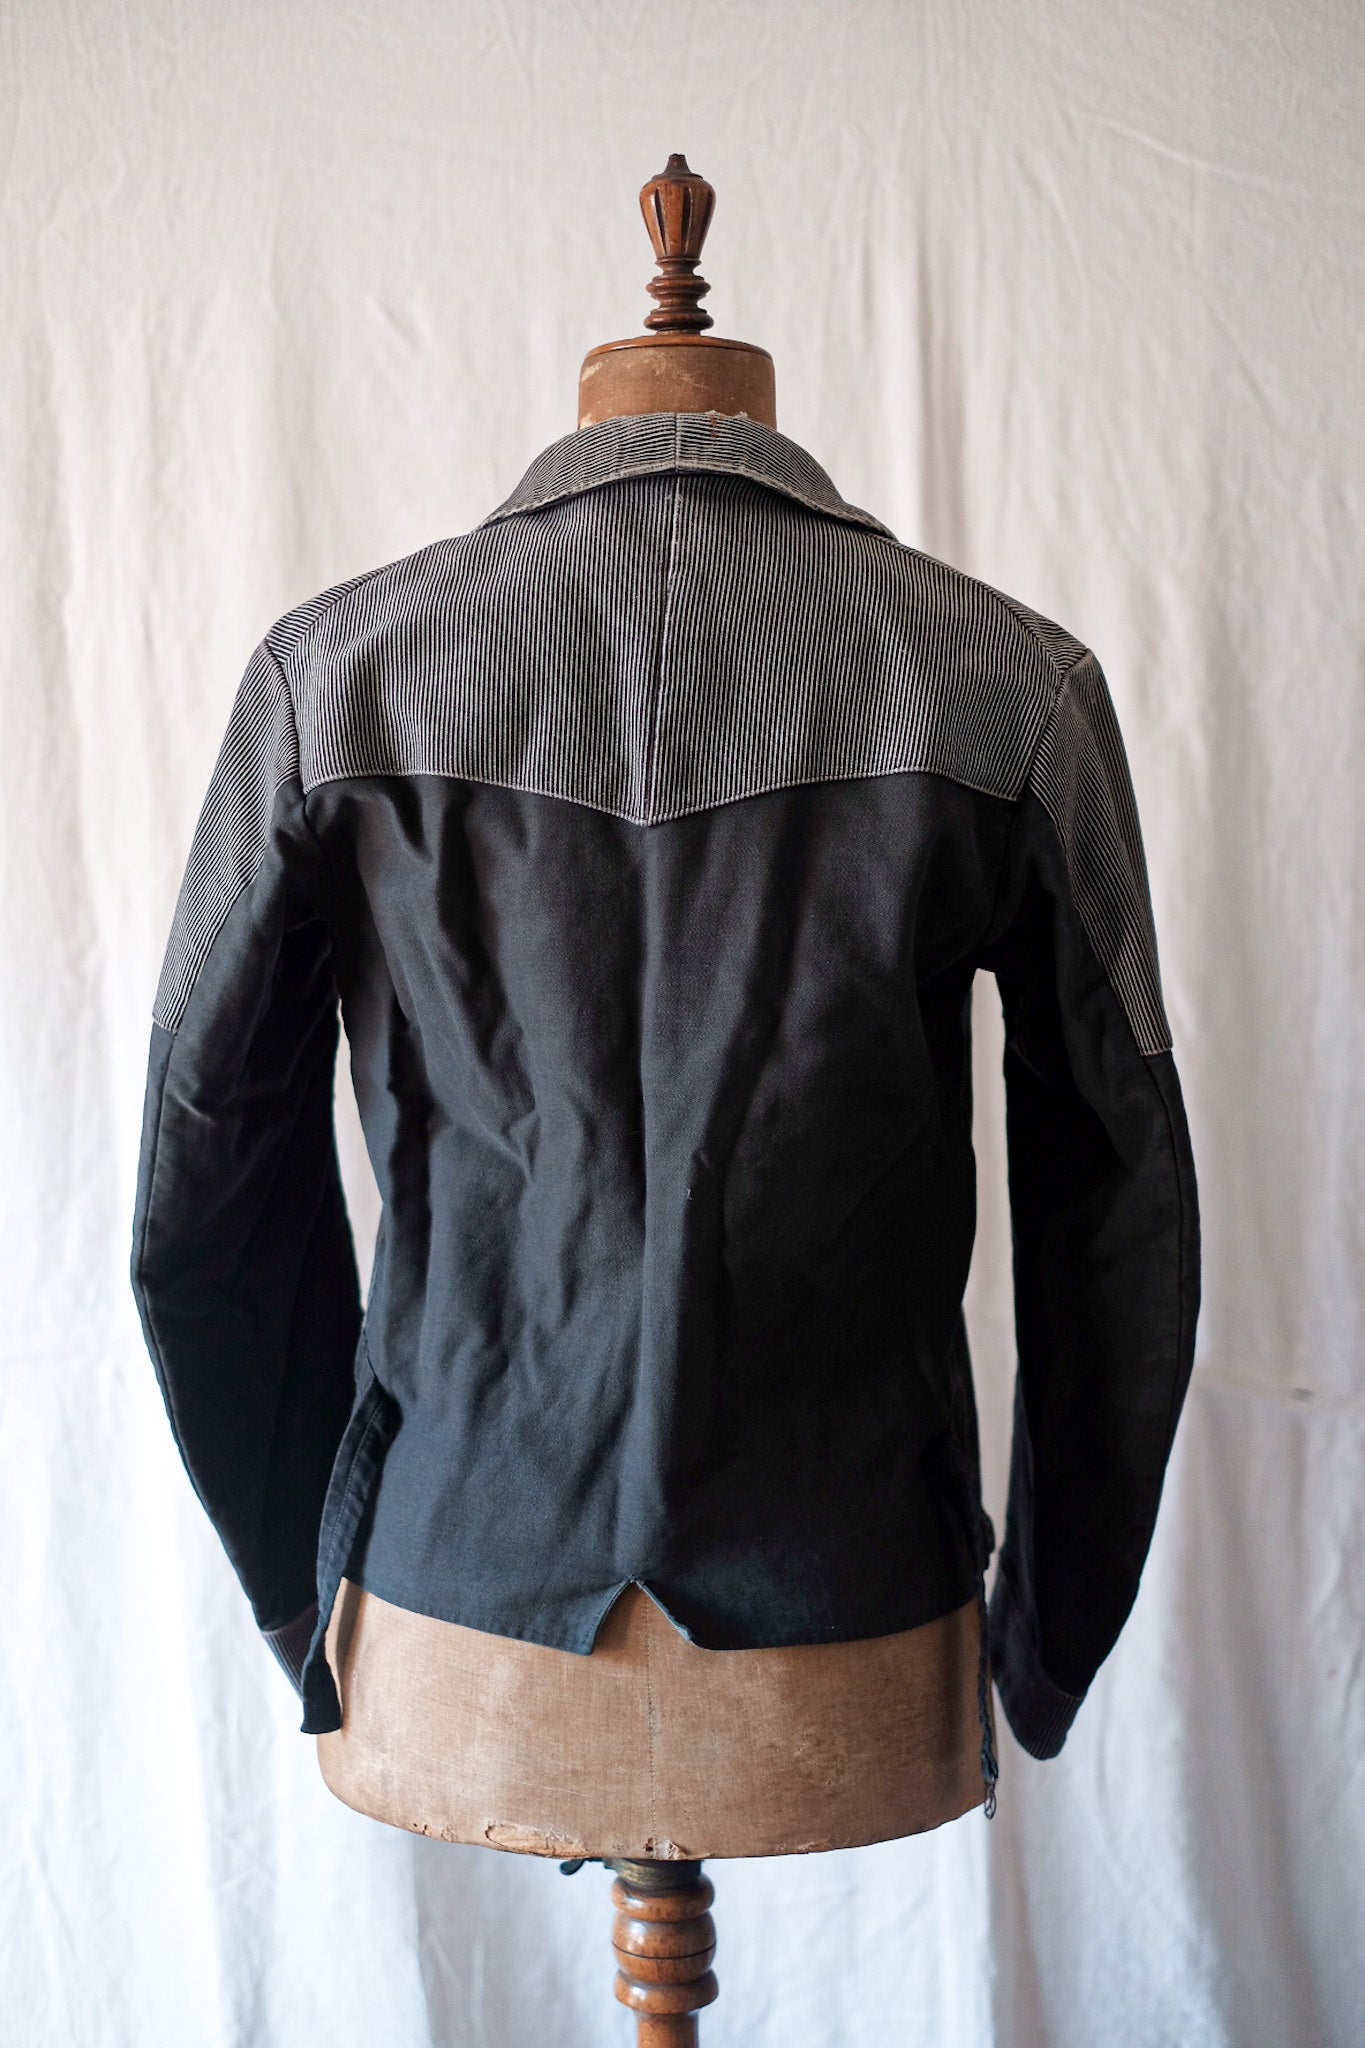 [~ 50 년대] 벨기에 빈티지 인쇄 몰드 스킨 더블 가슴 작업 재킷